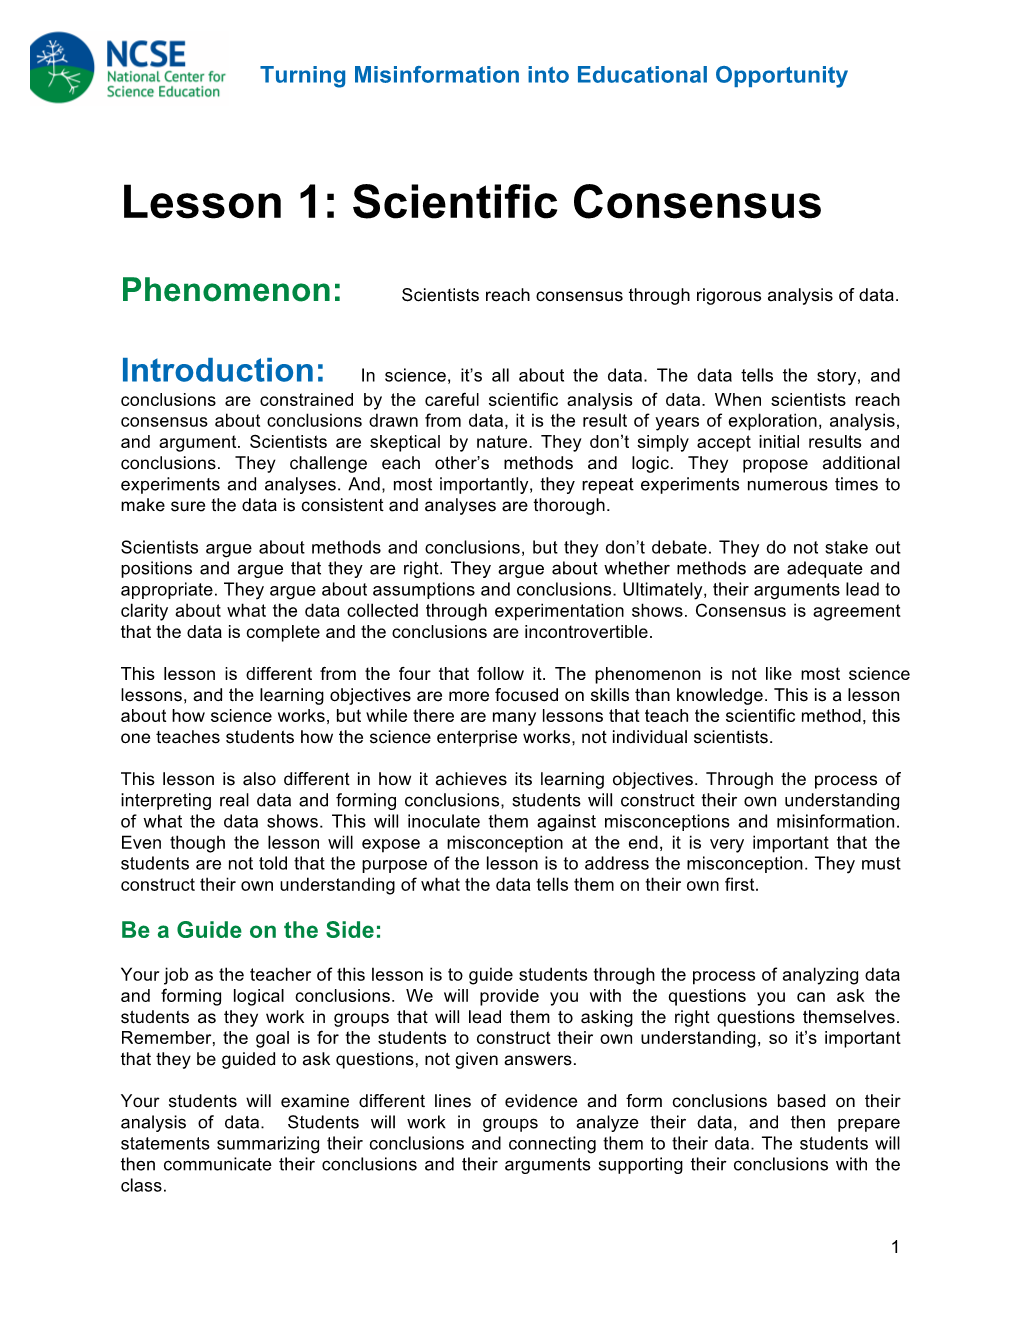 Lesson 1: Scientific Consensus